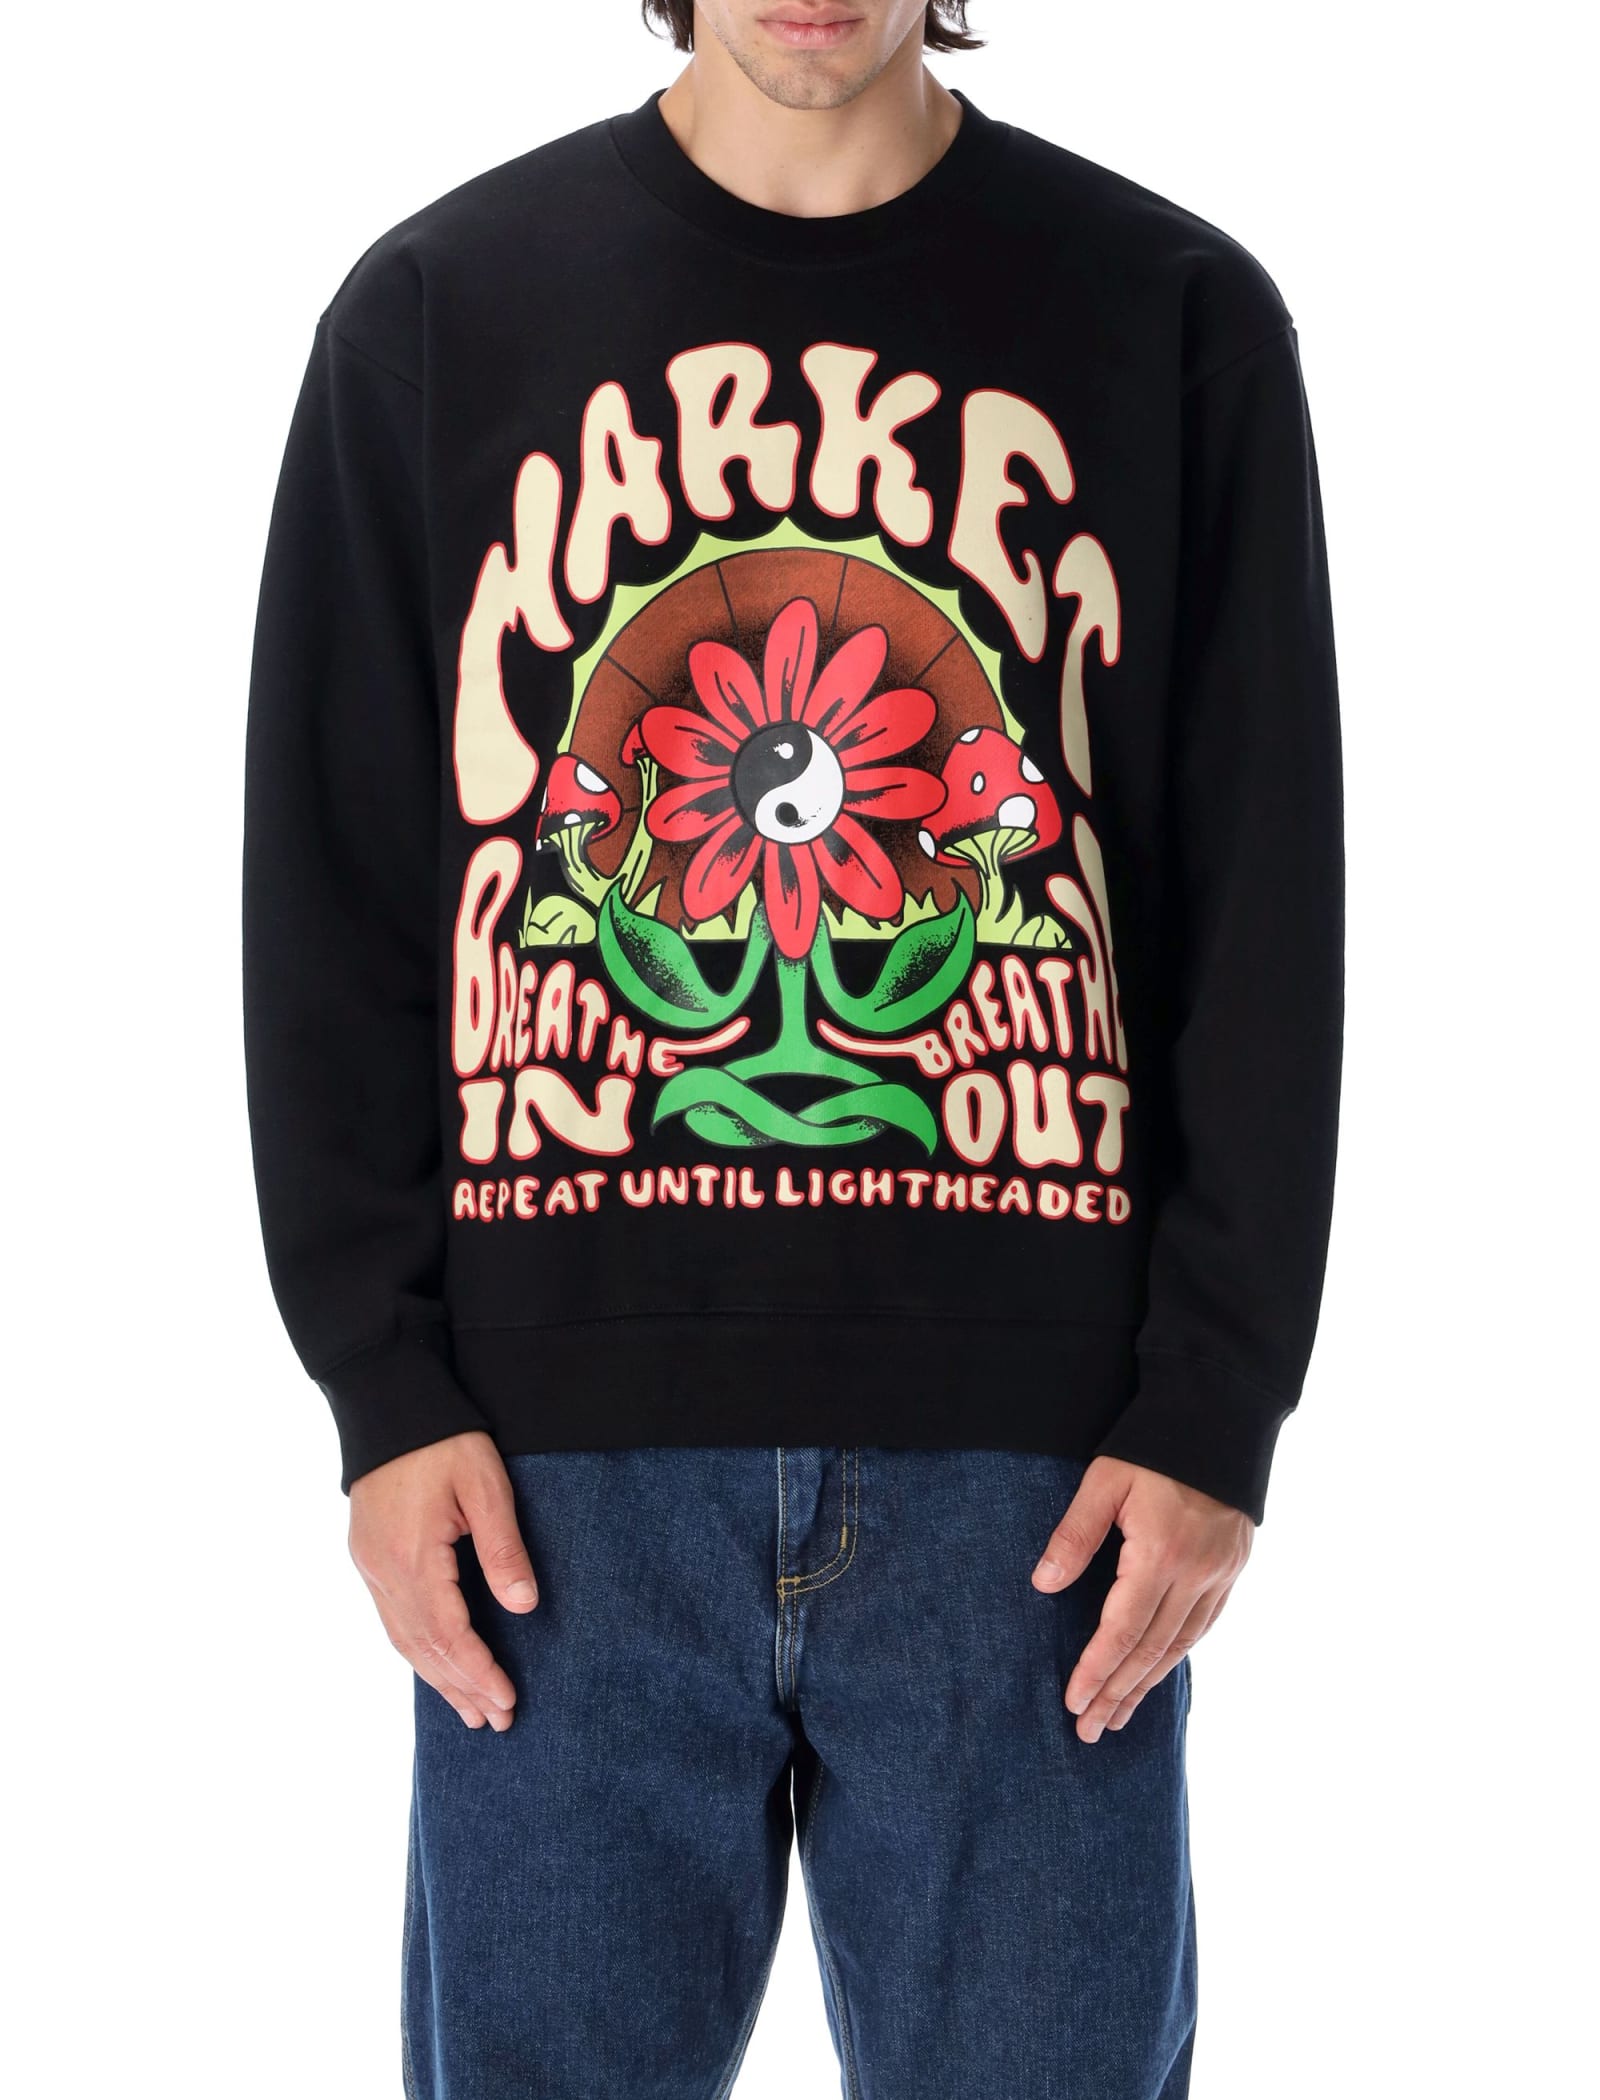 Market Breathwork Sweatshirt